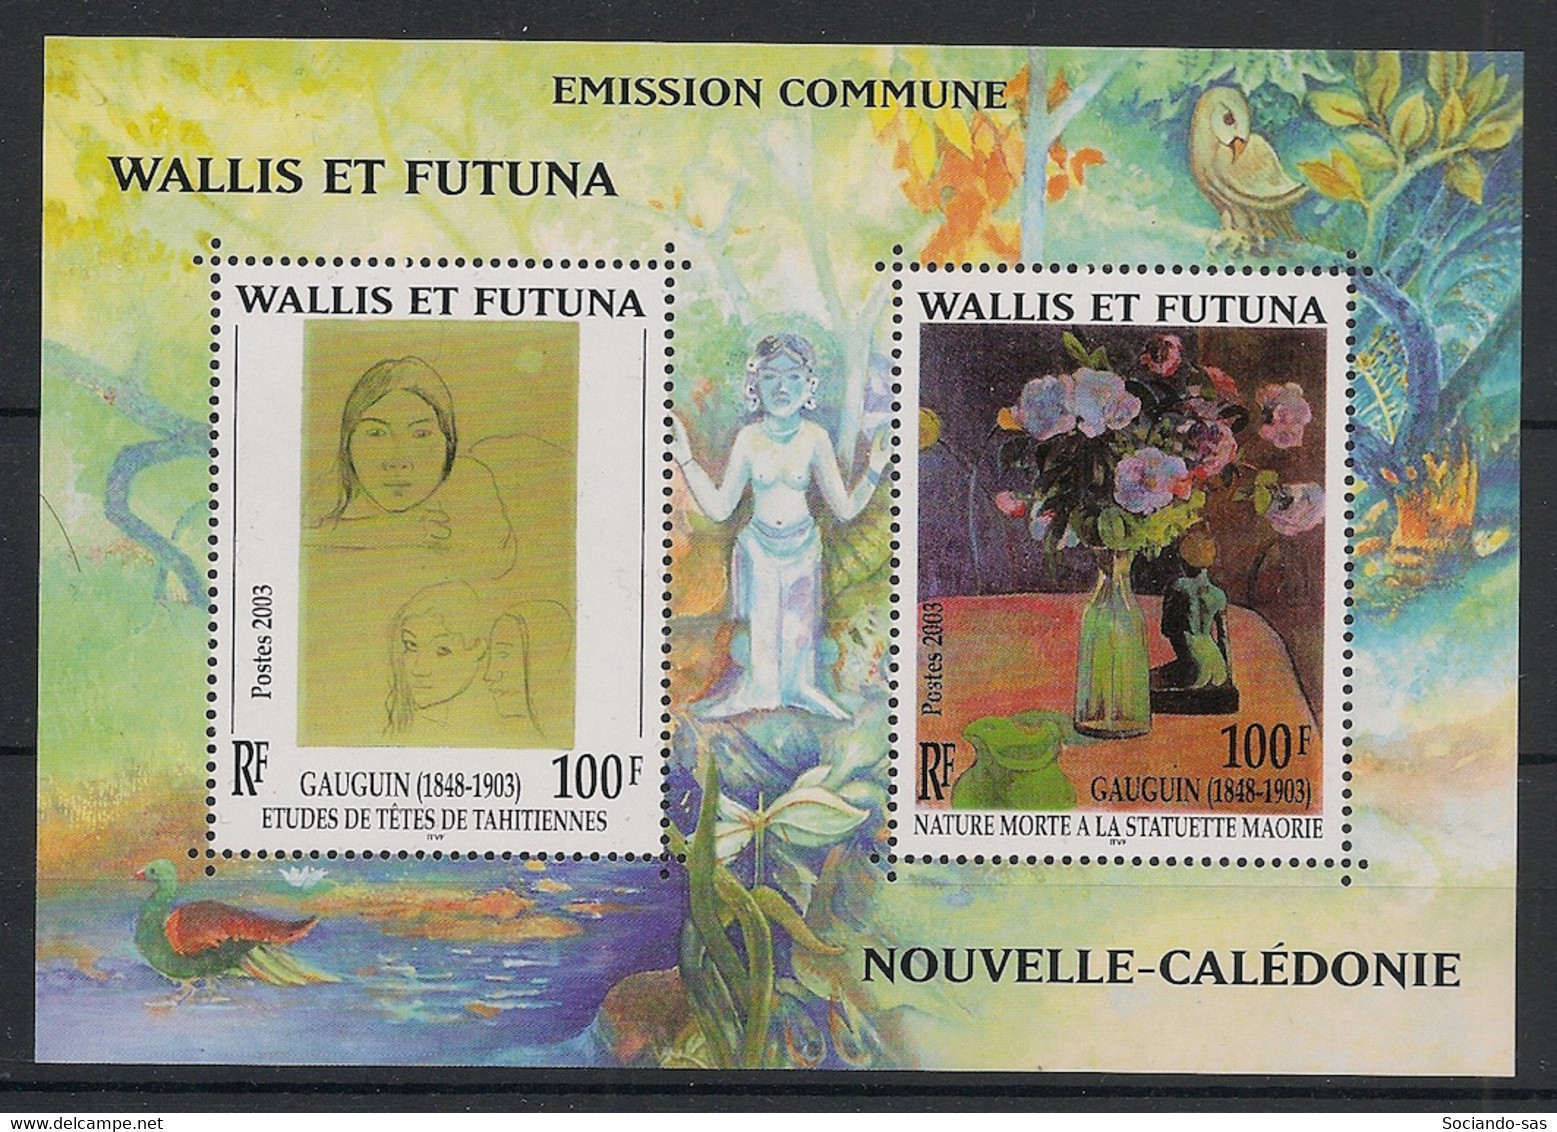 WALLIS ET FUTUNA - 2003 - Bloc Feuillet BF N°YT. 13 - Gauguin - Neuf Luxe ** / MNH / Postfrisch - Blocs-feuillets